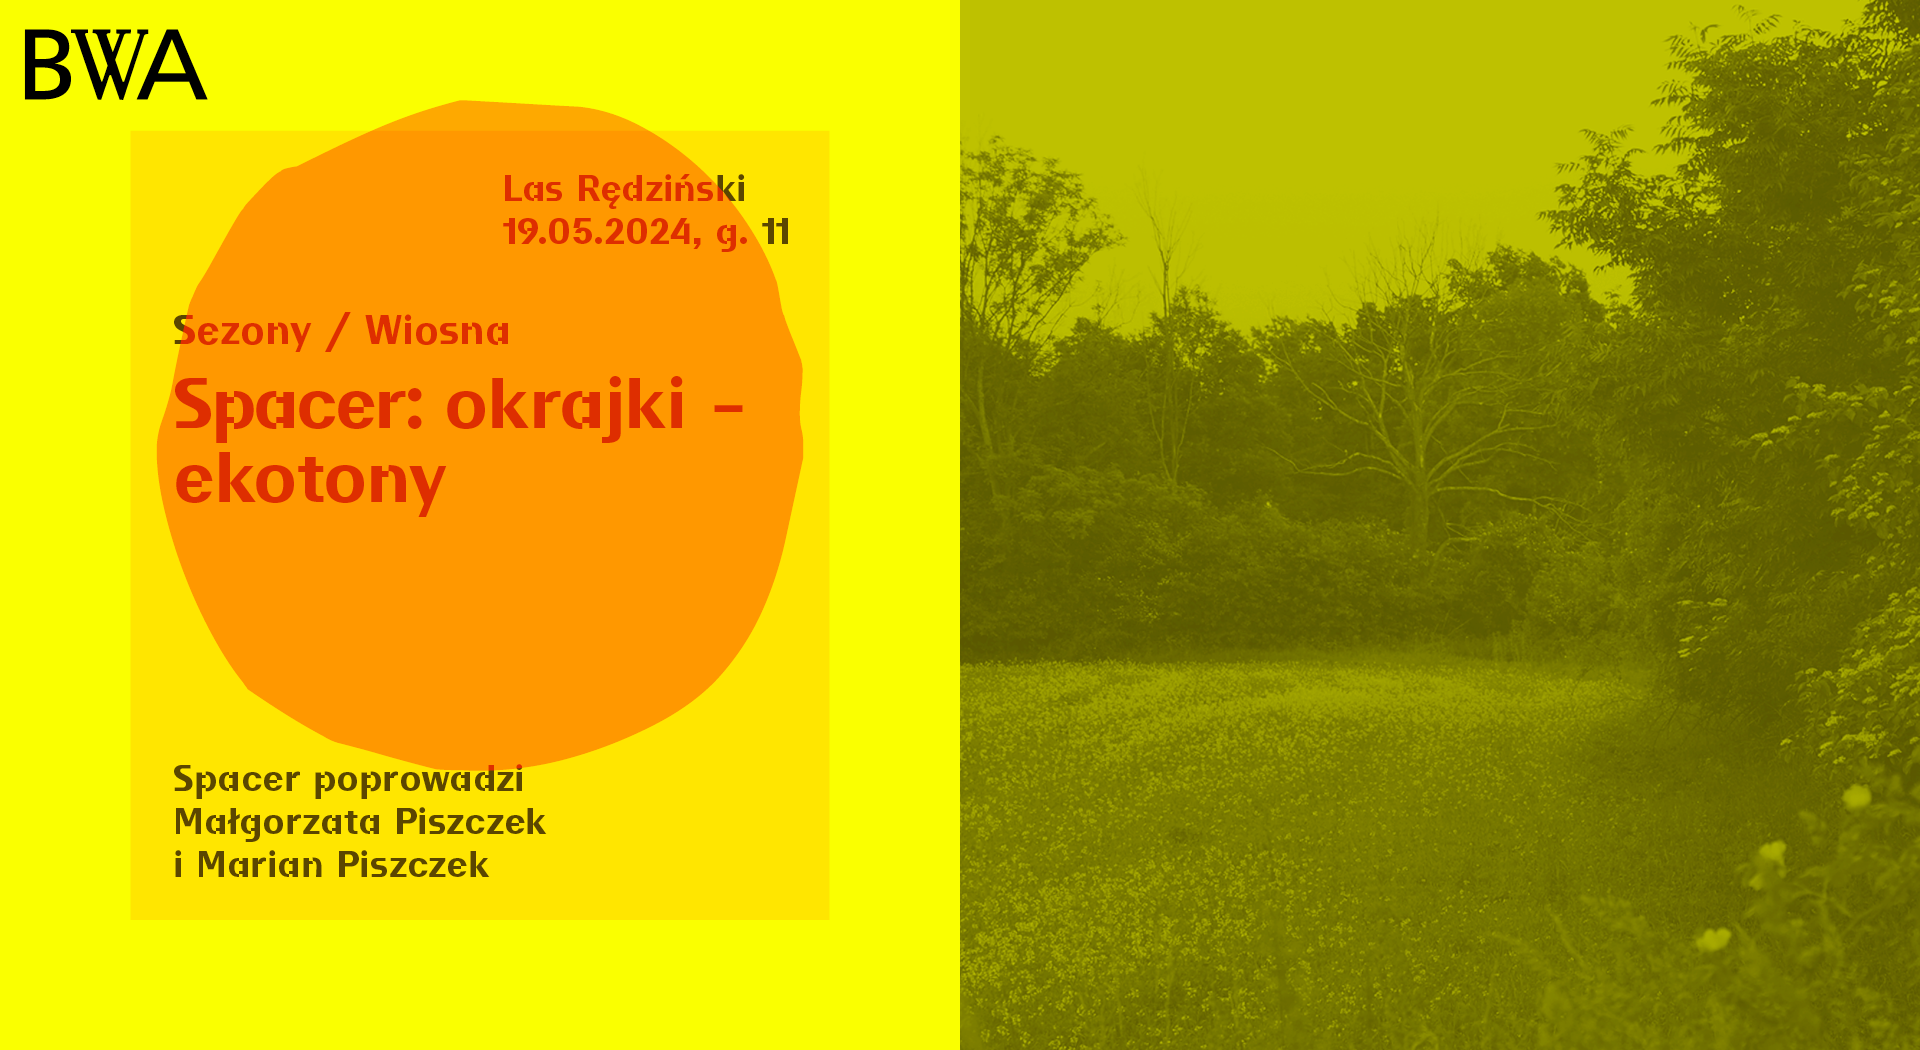 Podzielony obraz: lewa strona wyświetla żółty plakat z tekstem o wiosennym spacerze ekotonowym w języku polskim, prawa strona przedstawia bujną, zieloną ścieżkę przyrodniczą.